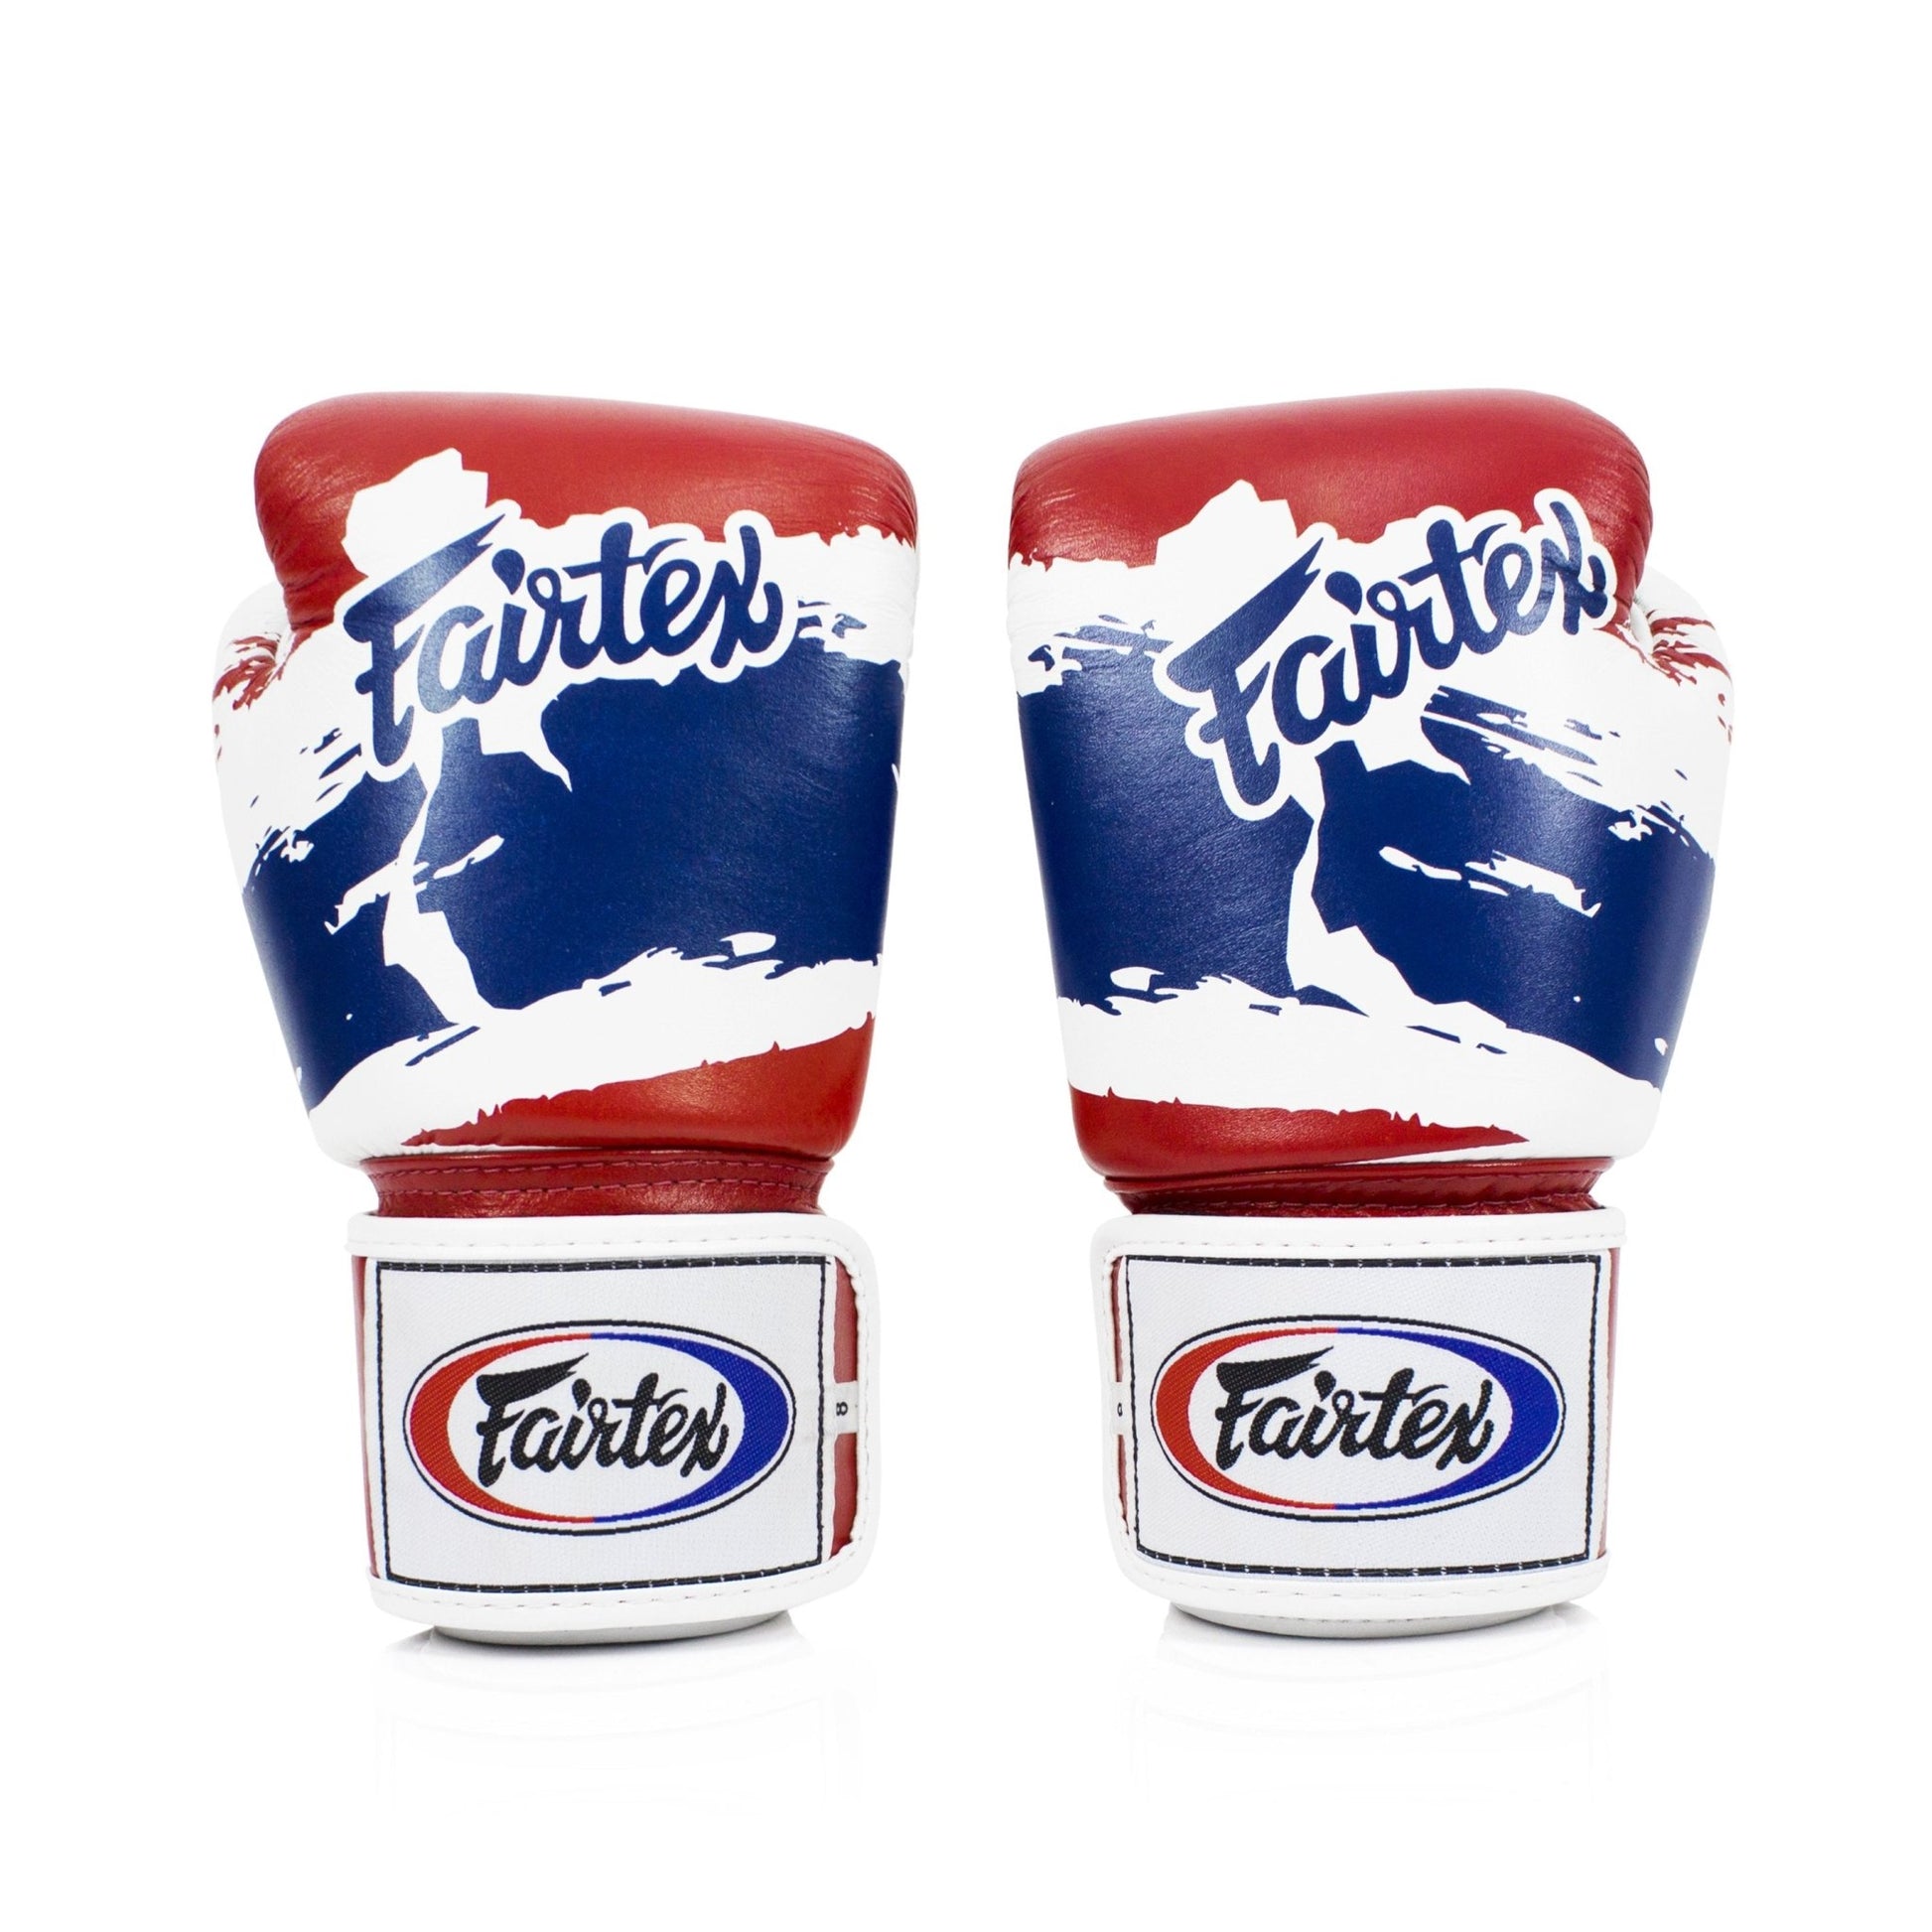 Fairtex Boxing Gloves BGV1 "Thai Pride" Limited Edition Fairtex